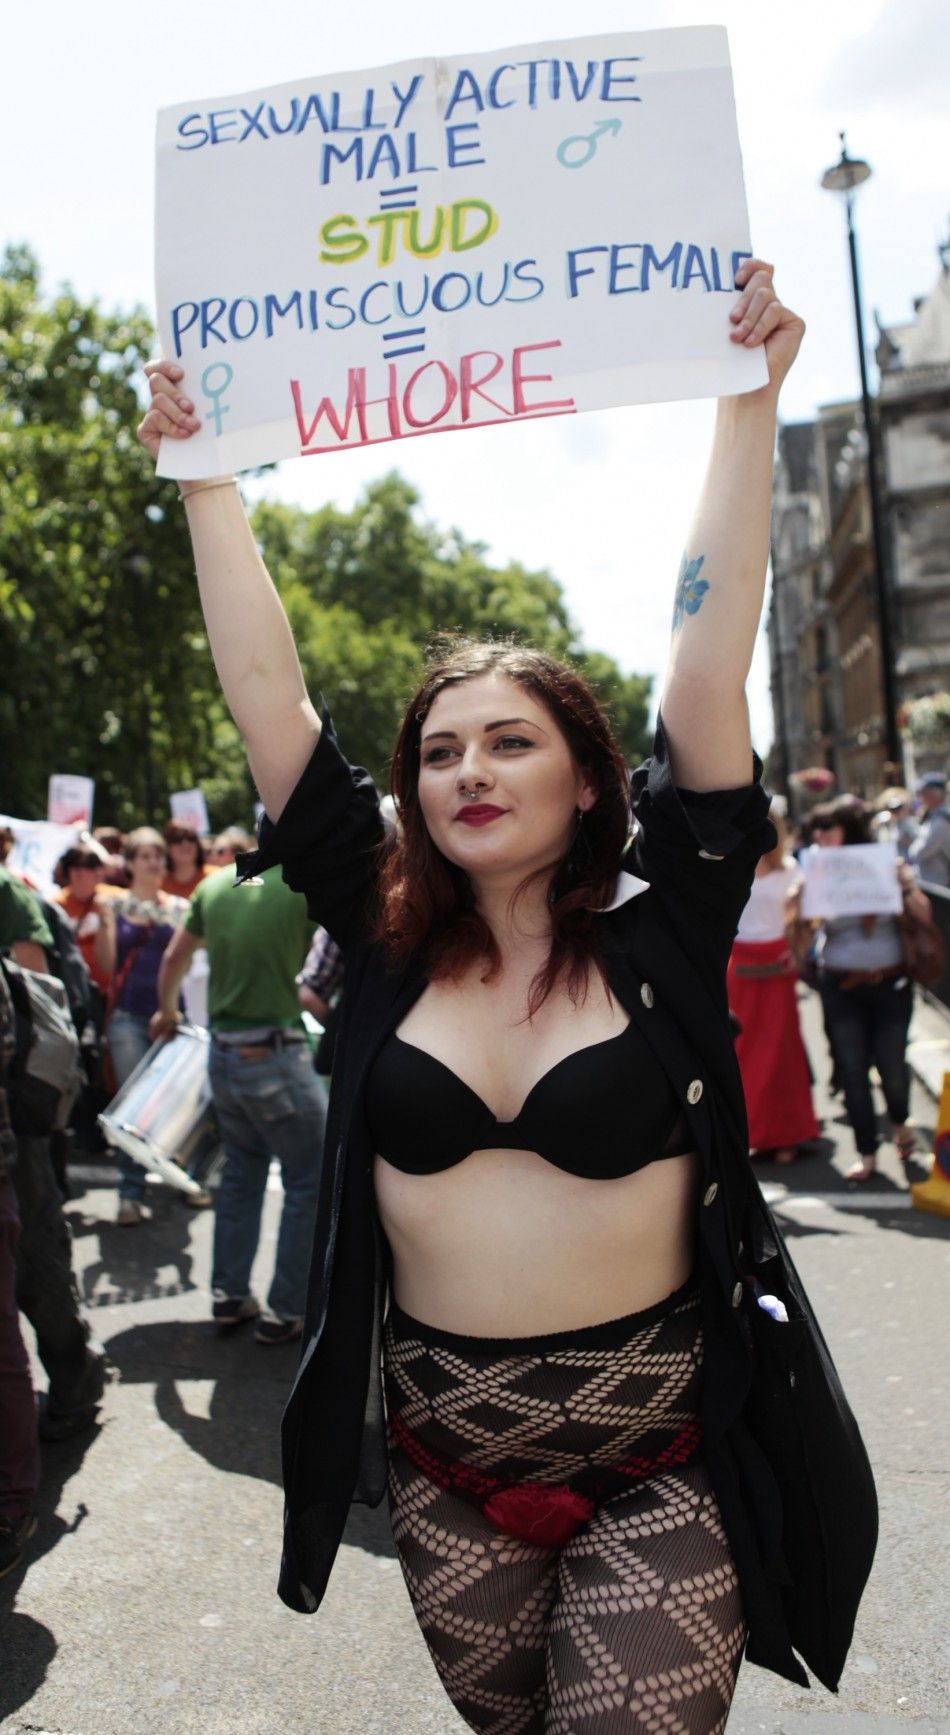 Slutwalk Protest Gears Up Across The World [photos]